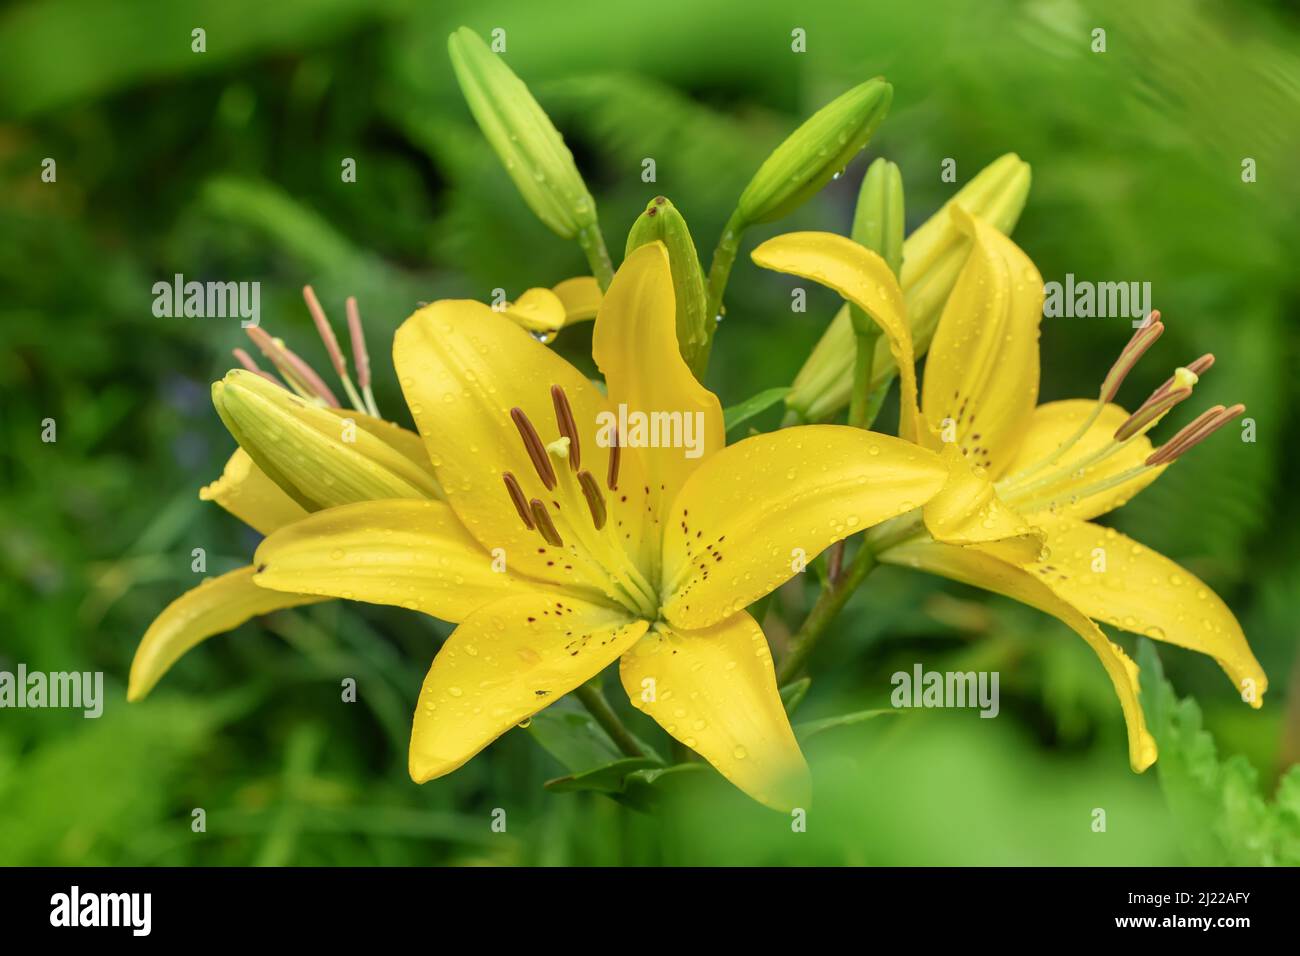 Lilie des gelben Planeten (Lilium) - die Sorte ist ein röhrenförmiger Hybride aus Lilien, einer Pflanzengattung der Familie der Liliengewächse. Mehrjährige Kräuter, mit Zwiebeln c ausgestattet Stockfoto